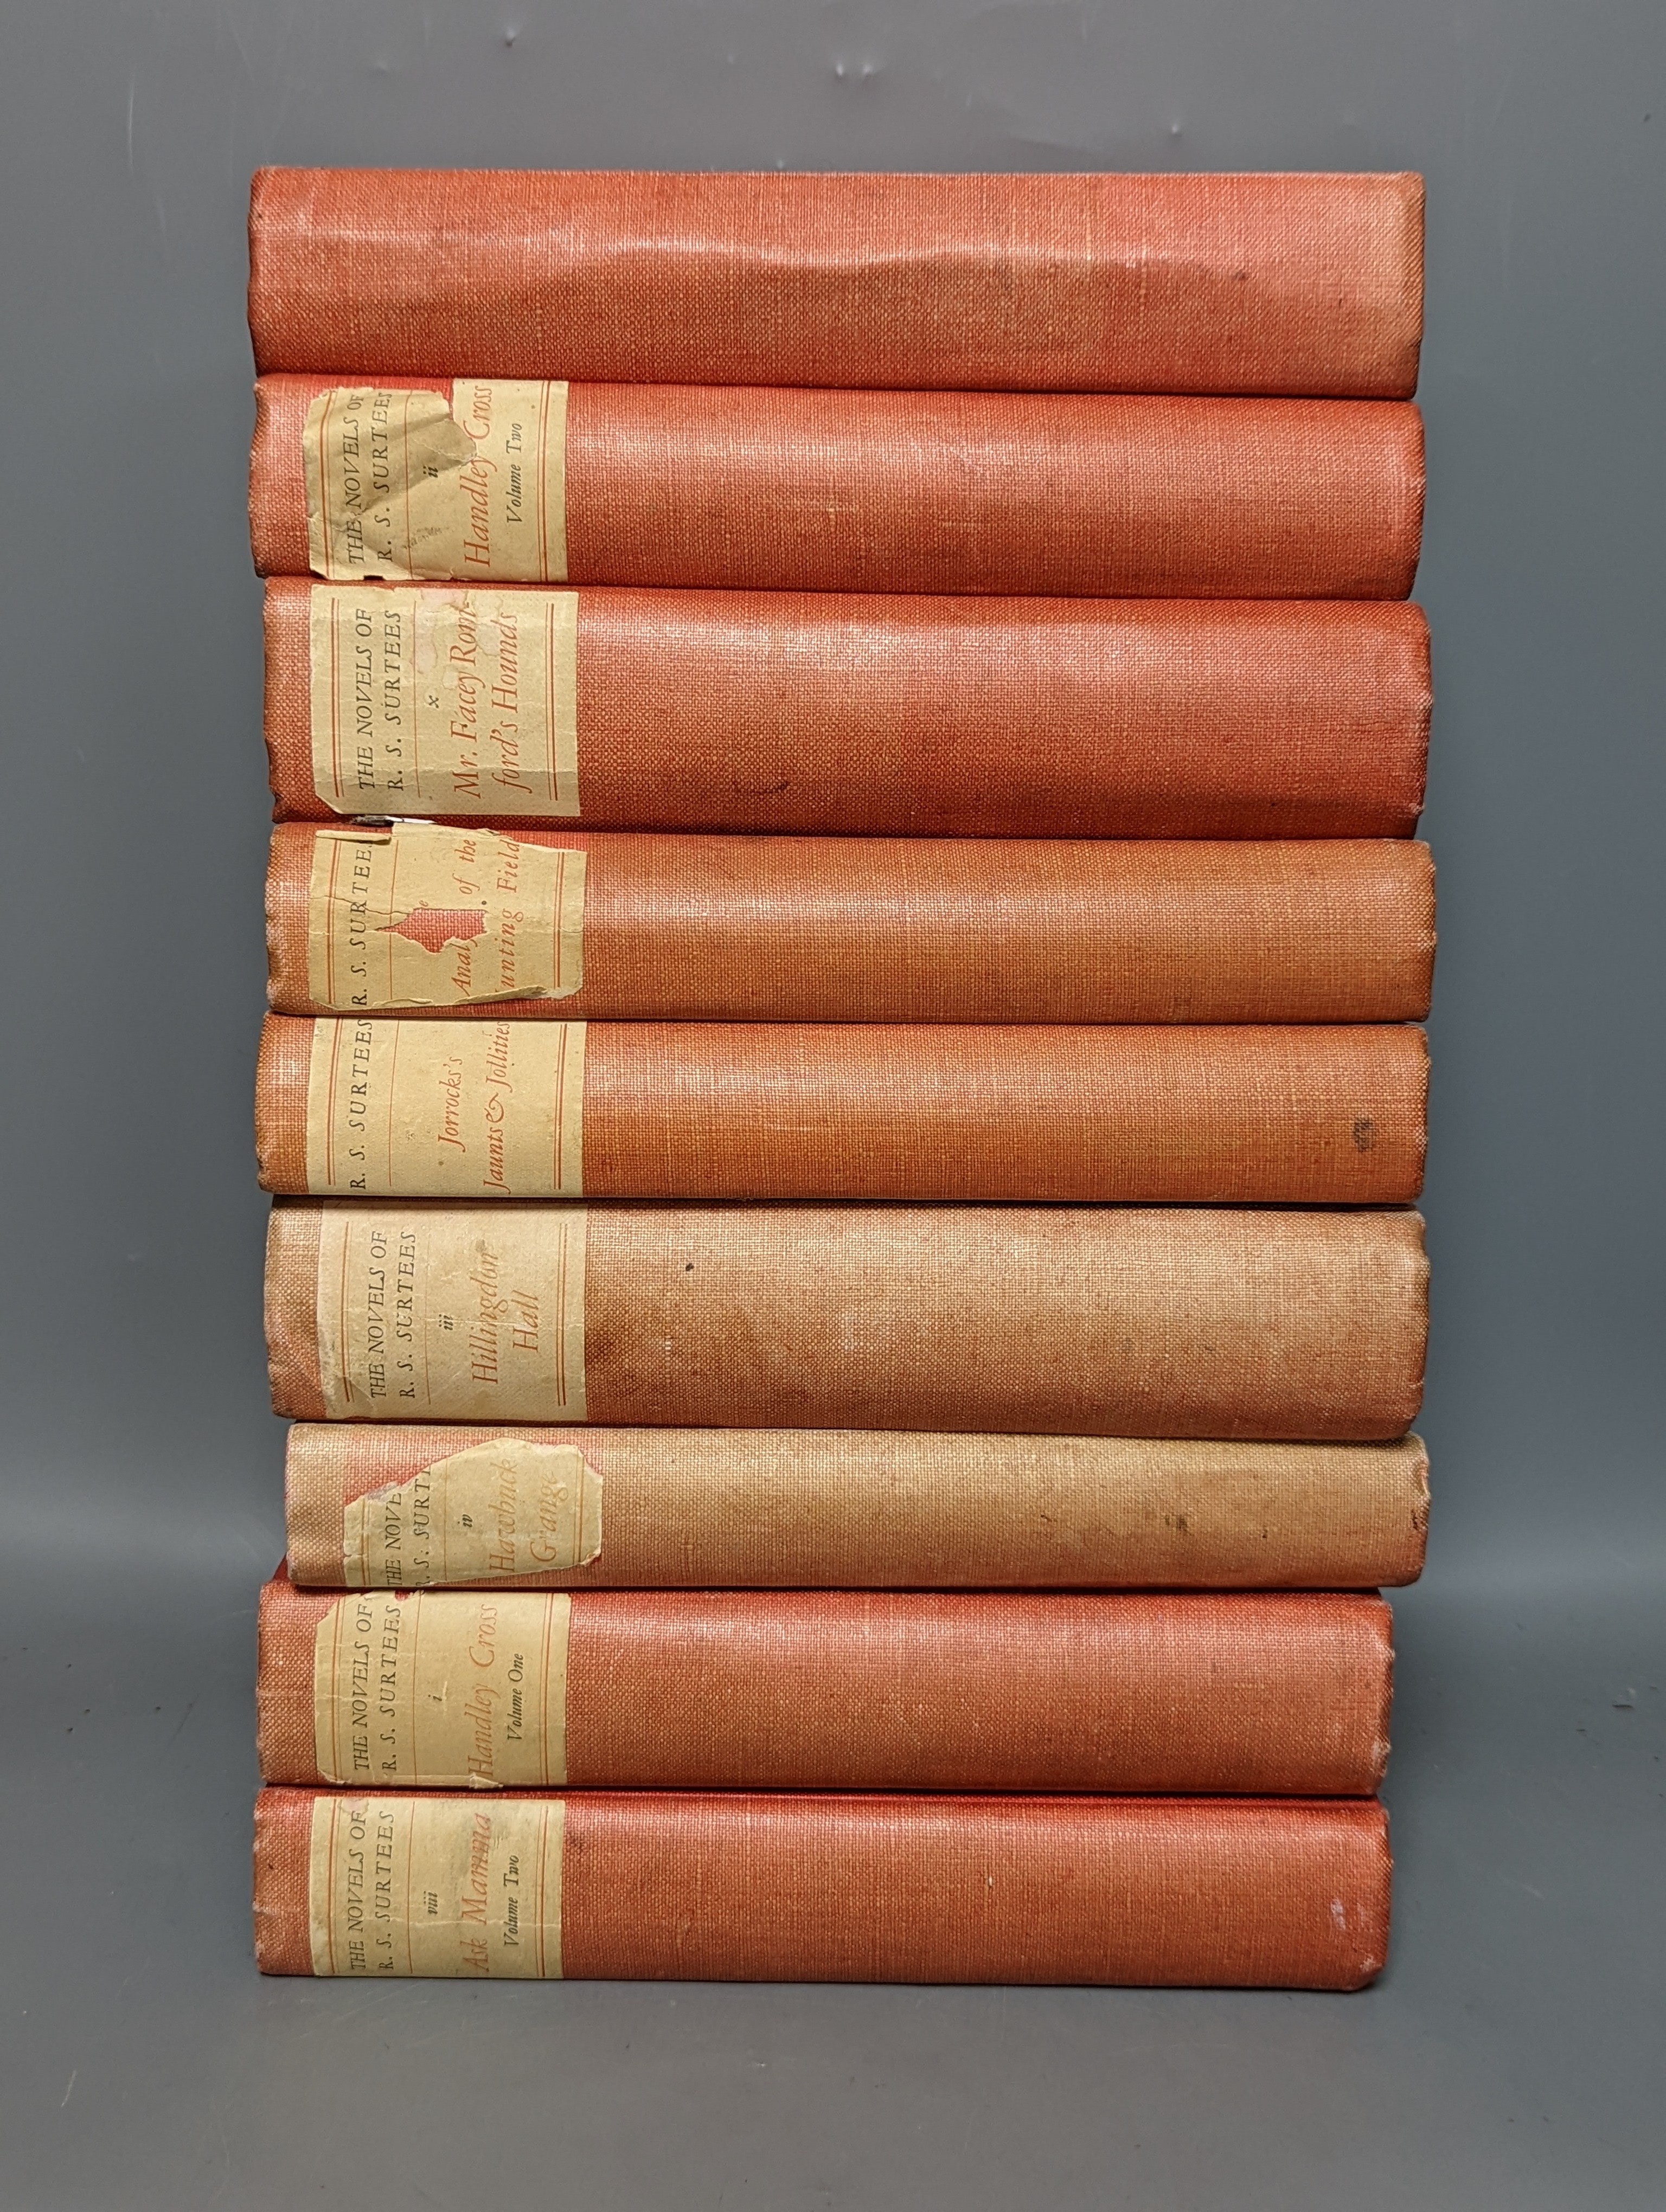 The Novels of R.S. Surtees, 9 vols.